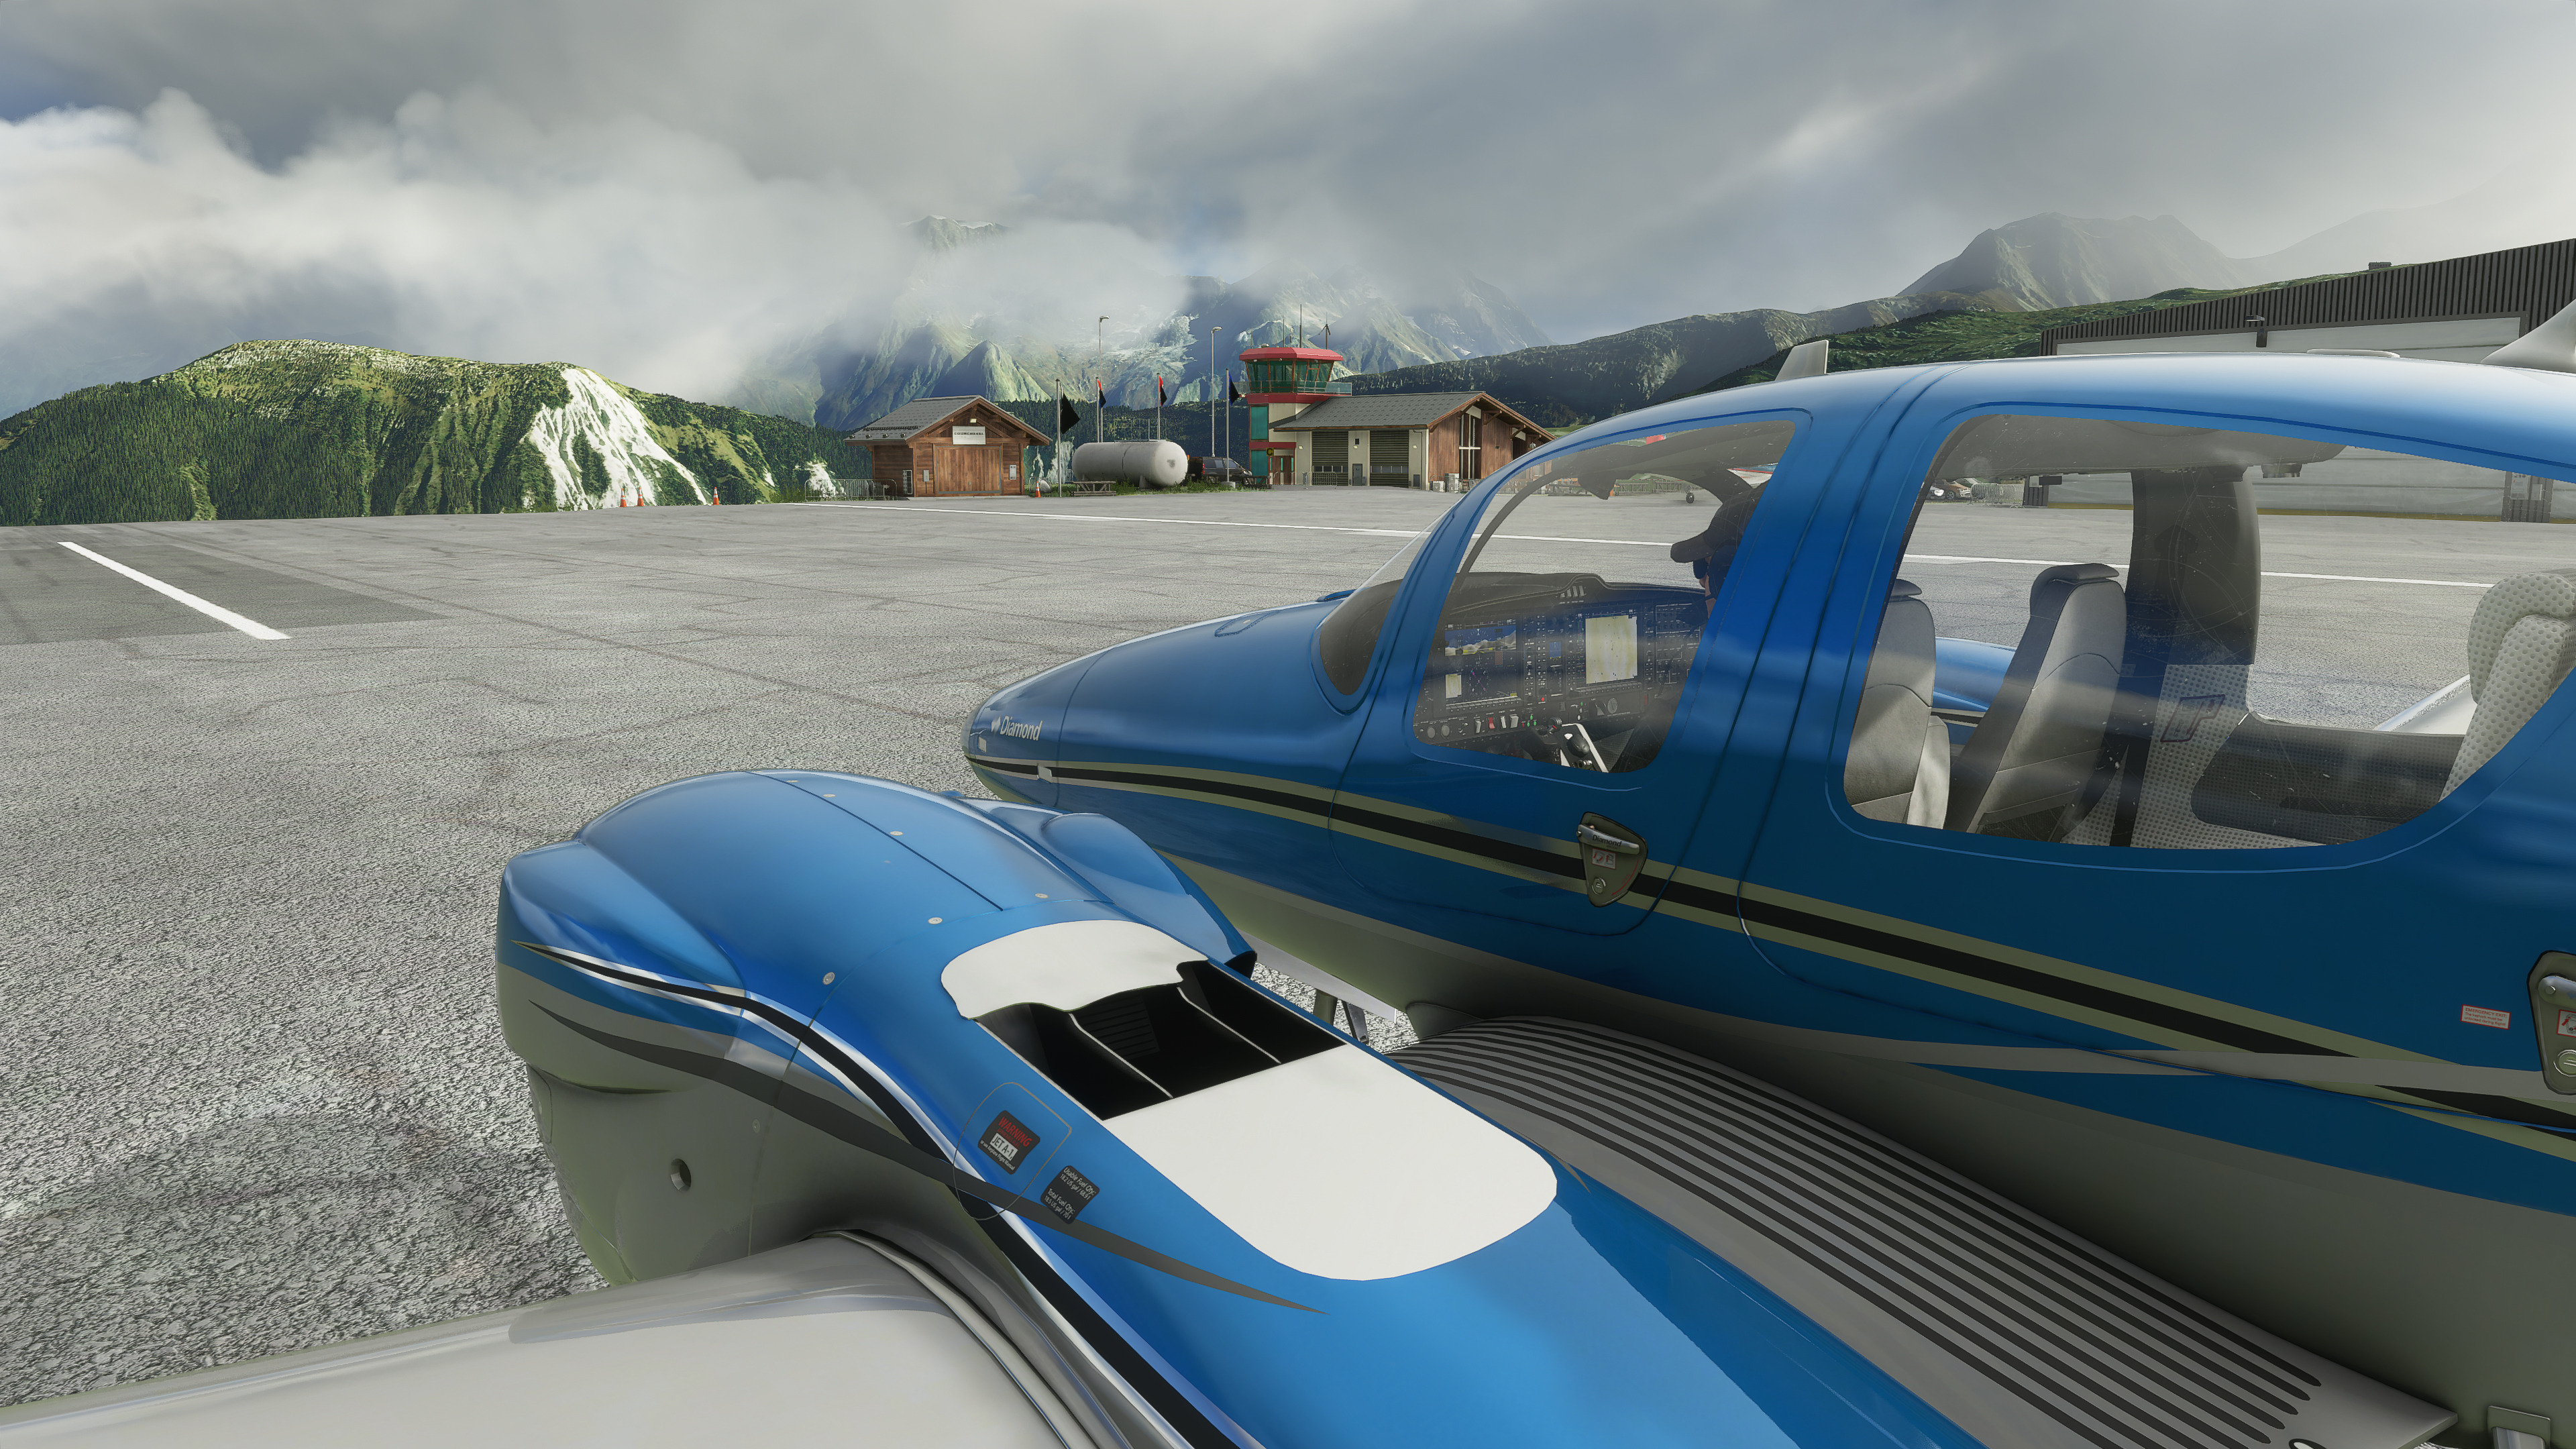 Microsoft Flight Simulator Guide Game 2020 APK Download 2023